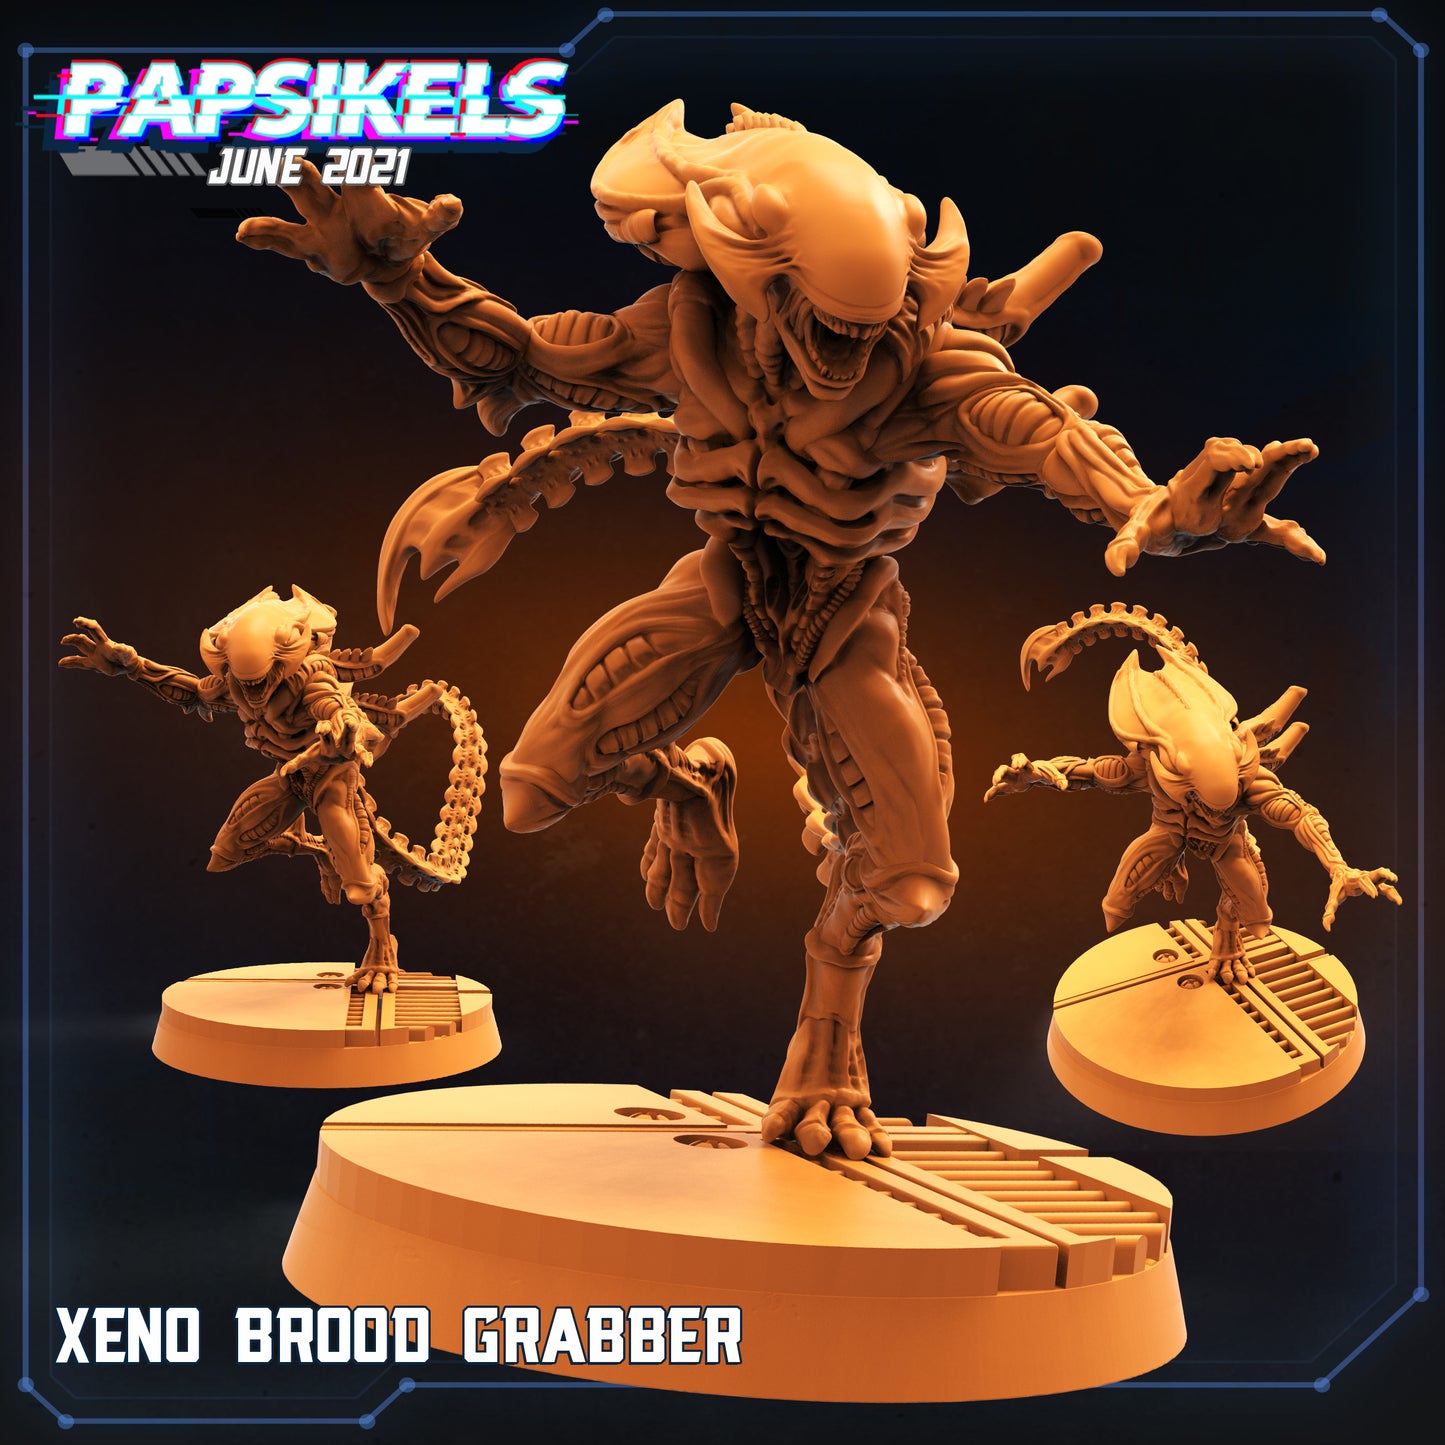 Xeno Brood Grabber